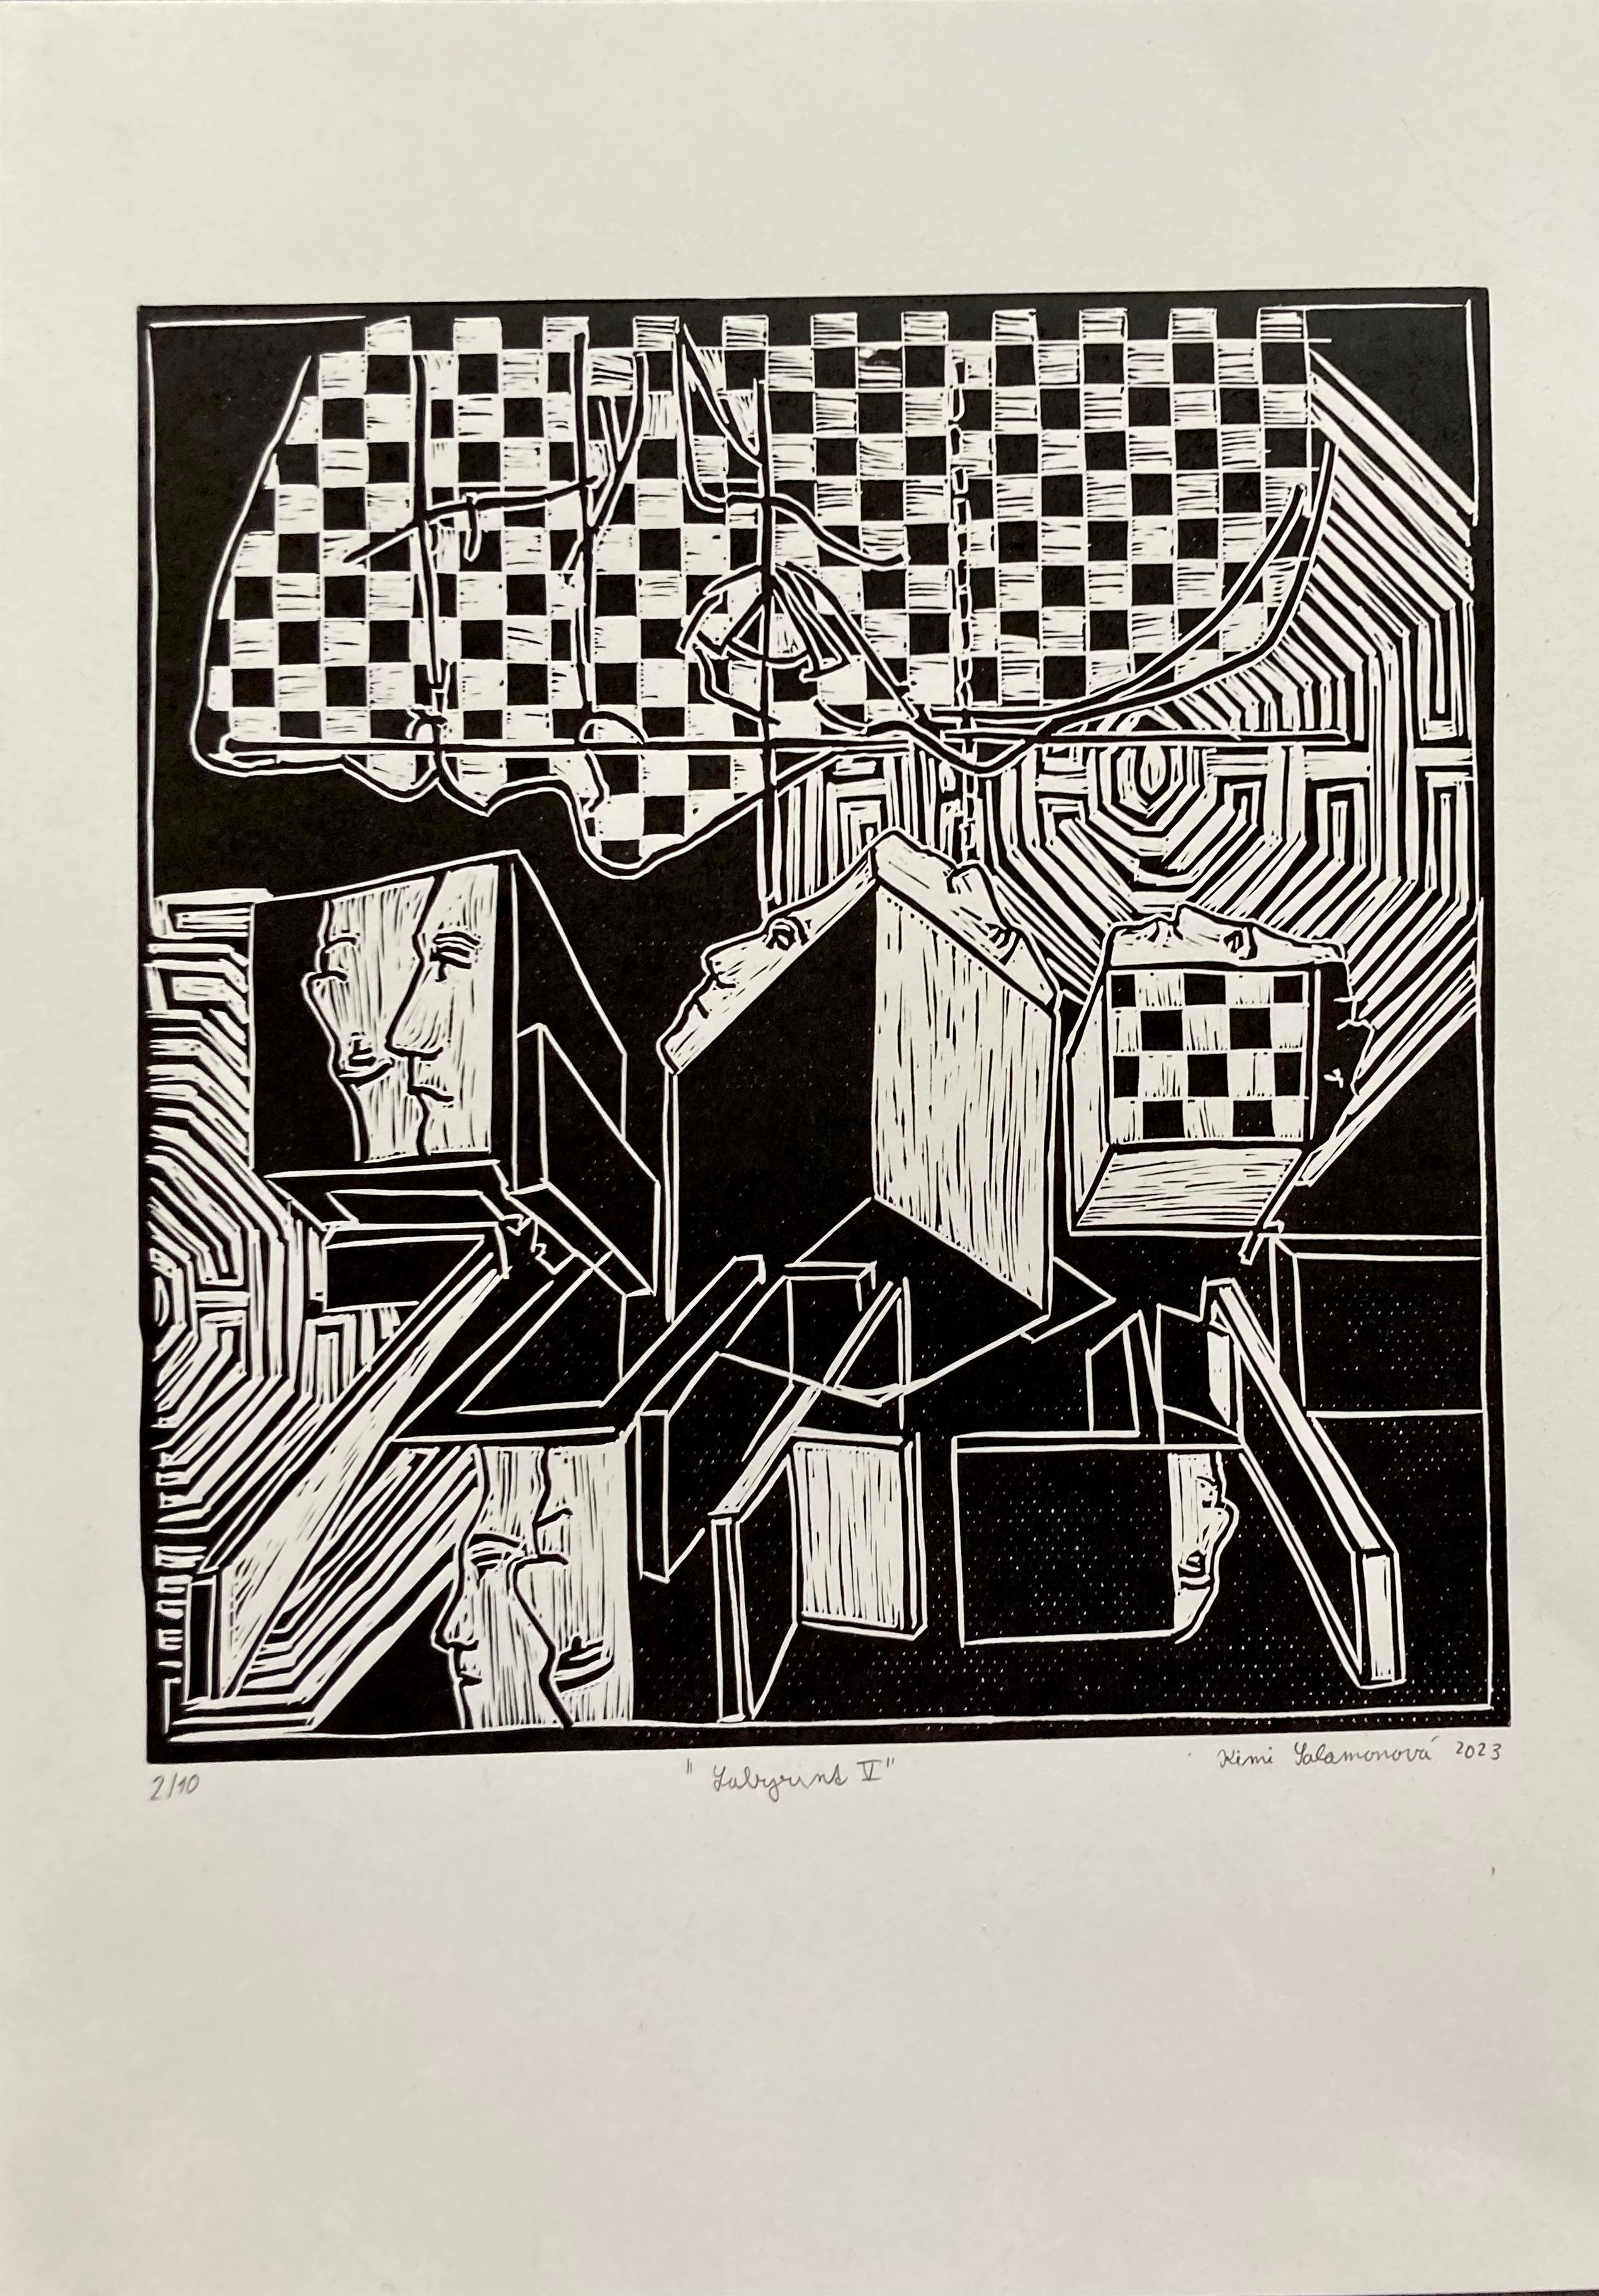 Kimi Salamonova Abstract Print - Labyrint. V. / Linocut / Edition  2/10 signed